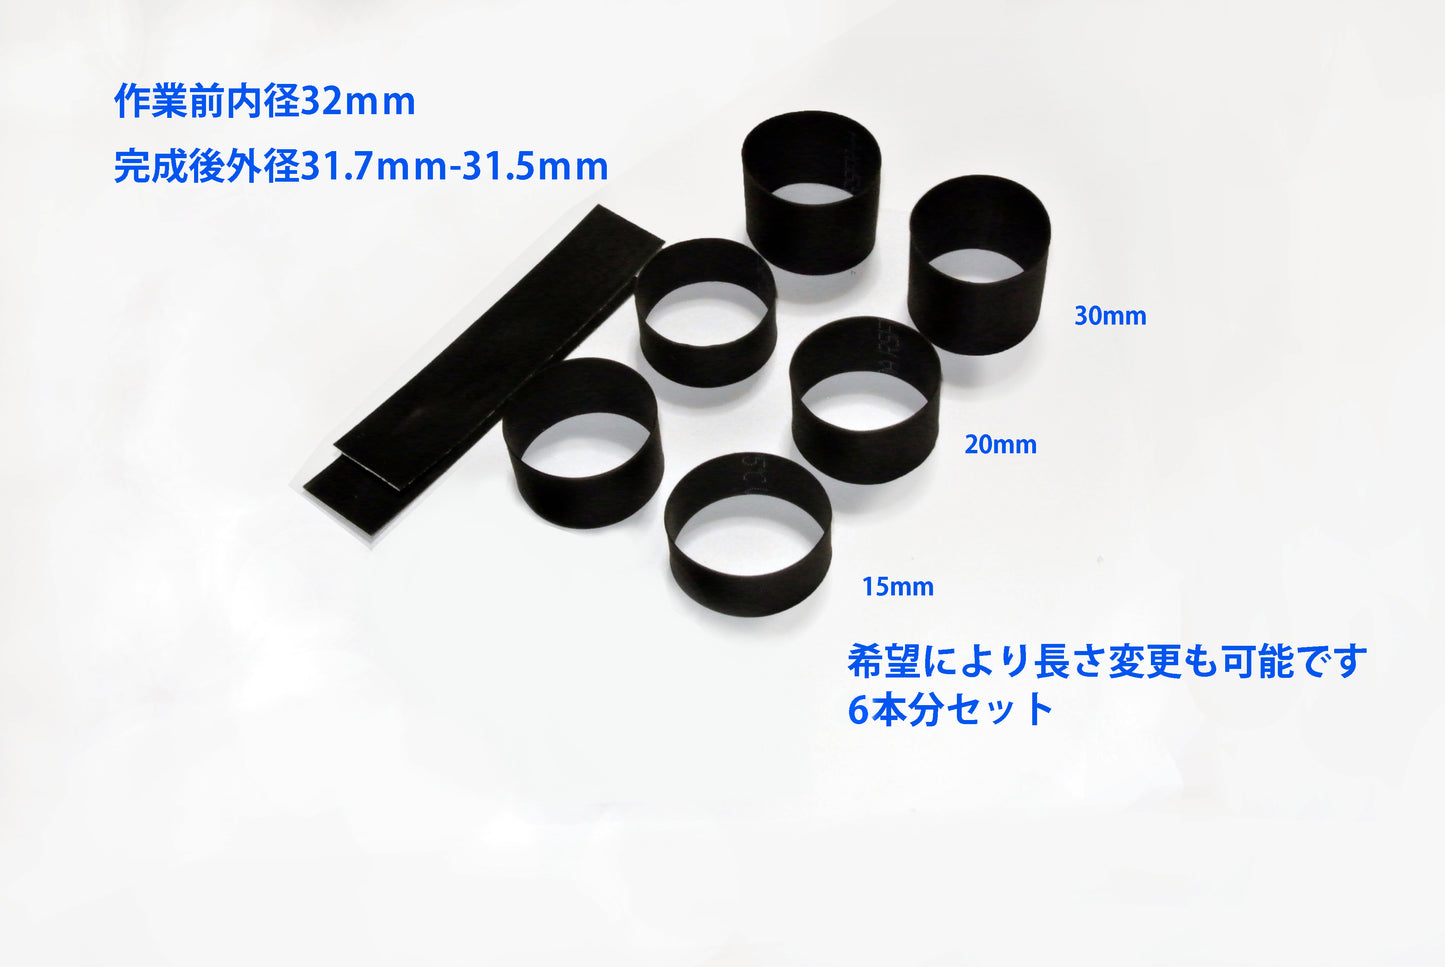 Набор для изменения размера окуляра микроскопа (30 мм) на размер окуляра для астрономических объектов (31,7 мм, 1,25 дюйма)